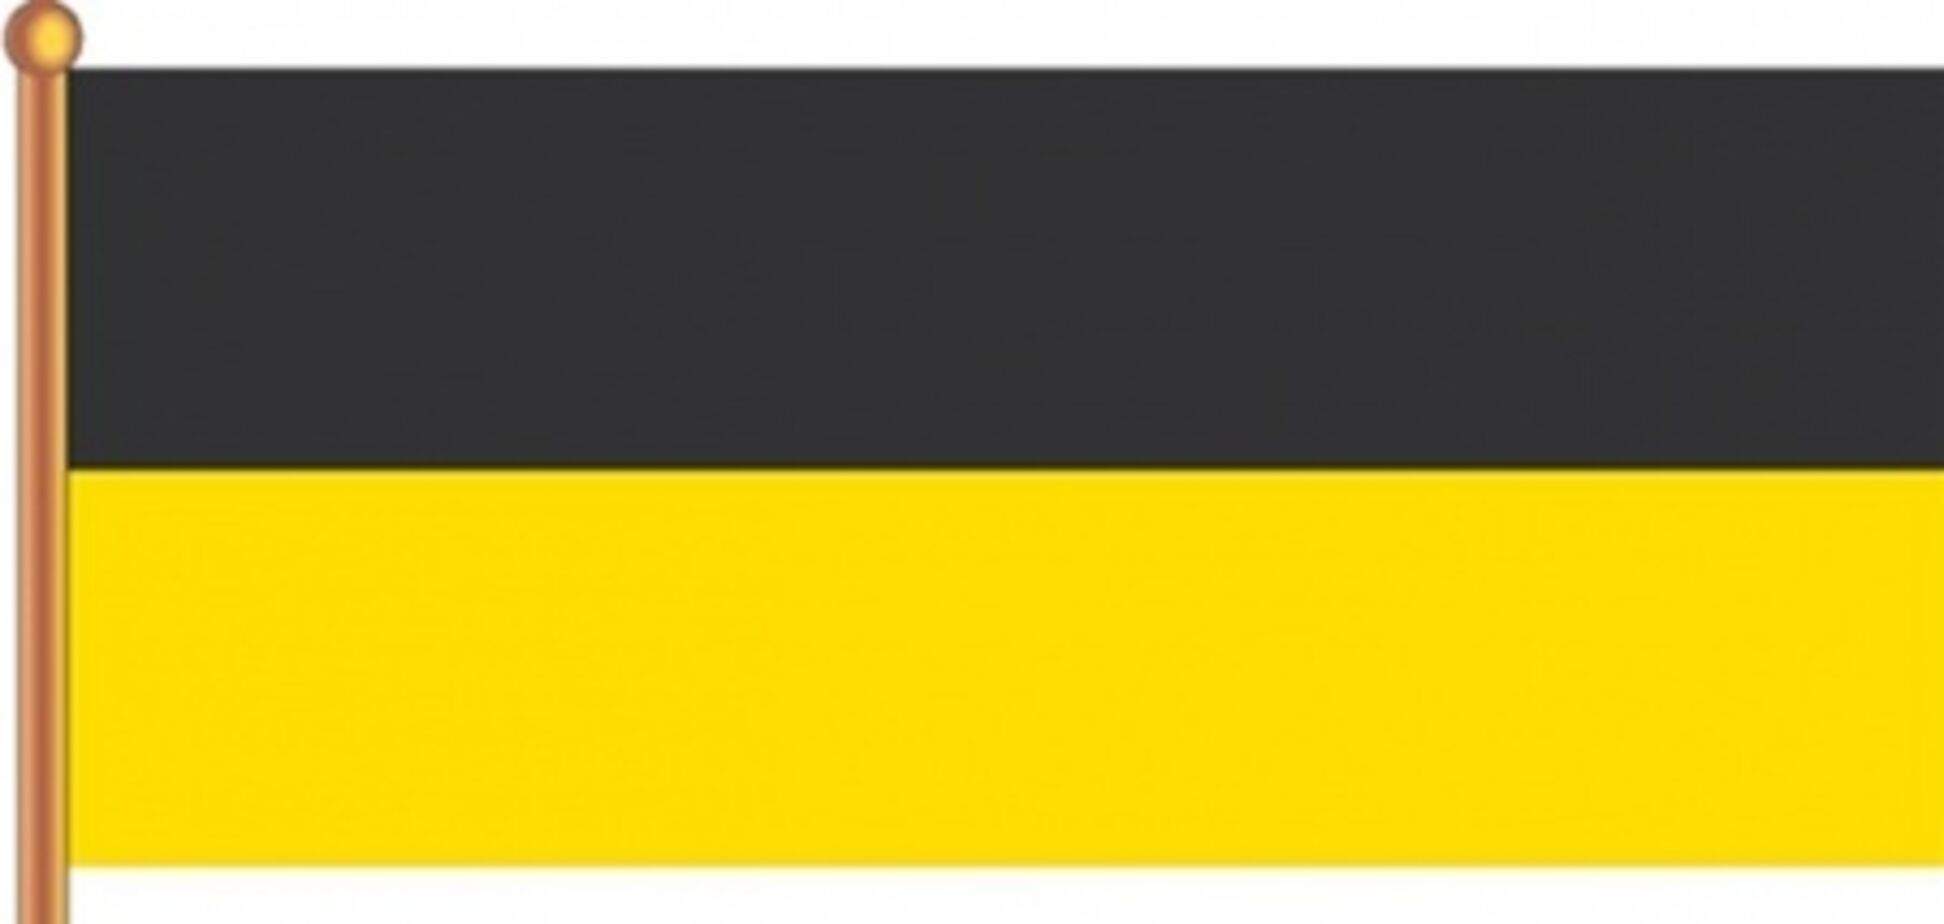 Жириновский предлагает вернуть России черно-желто-белый флаг